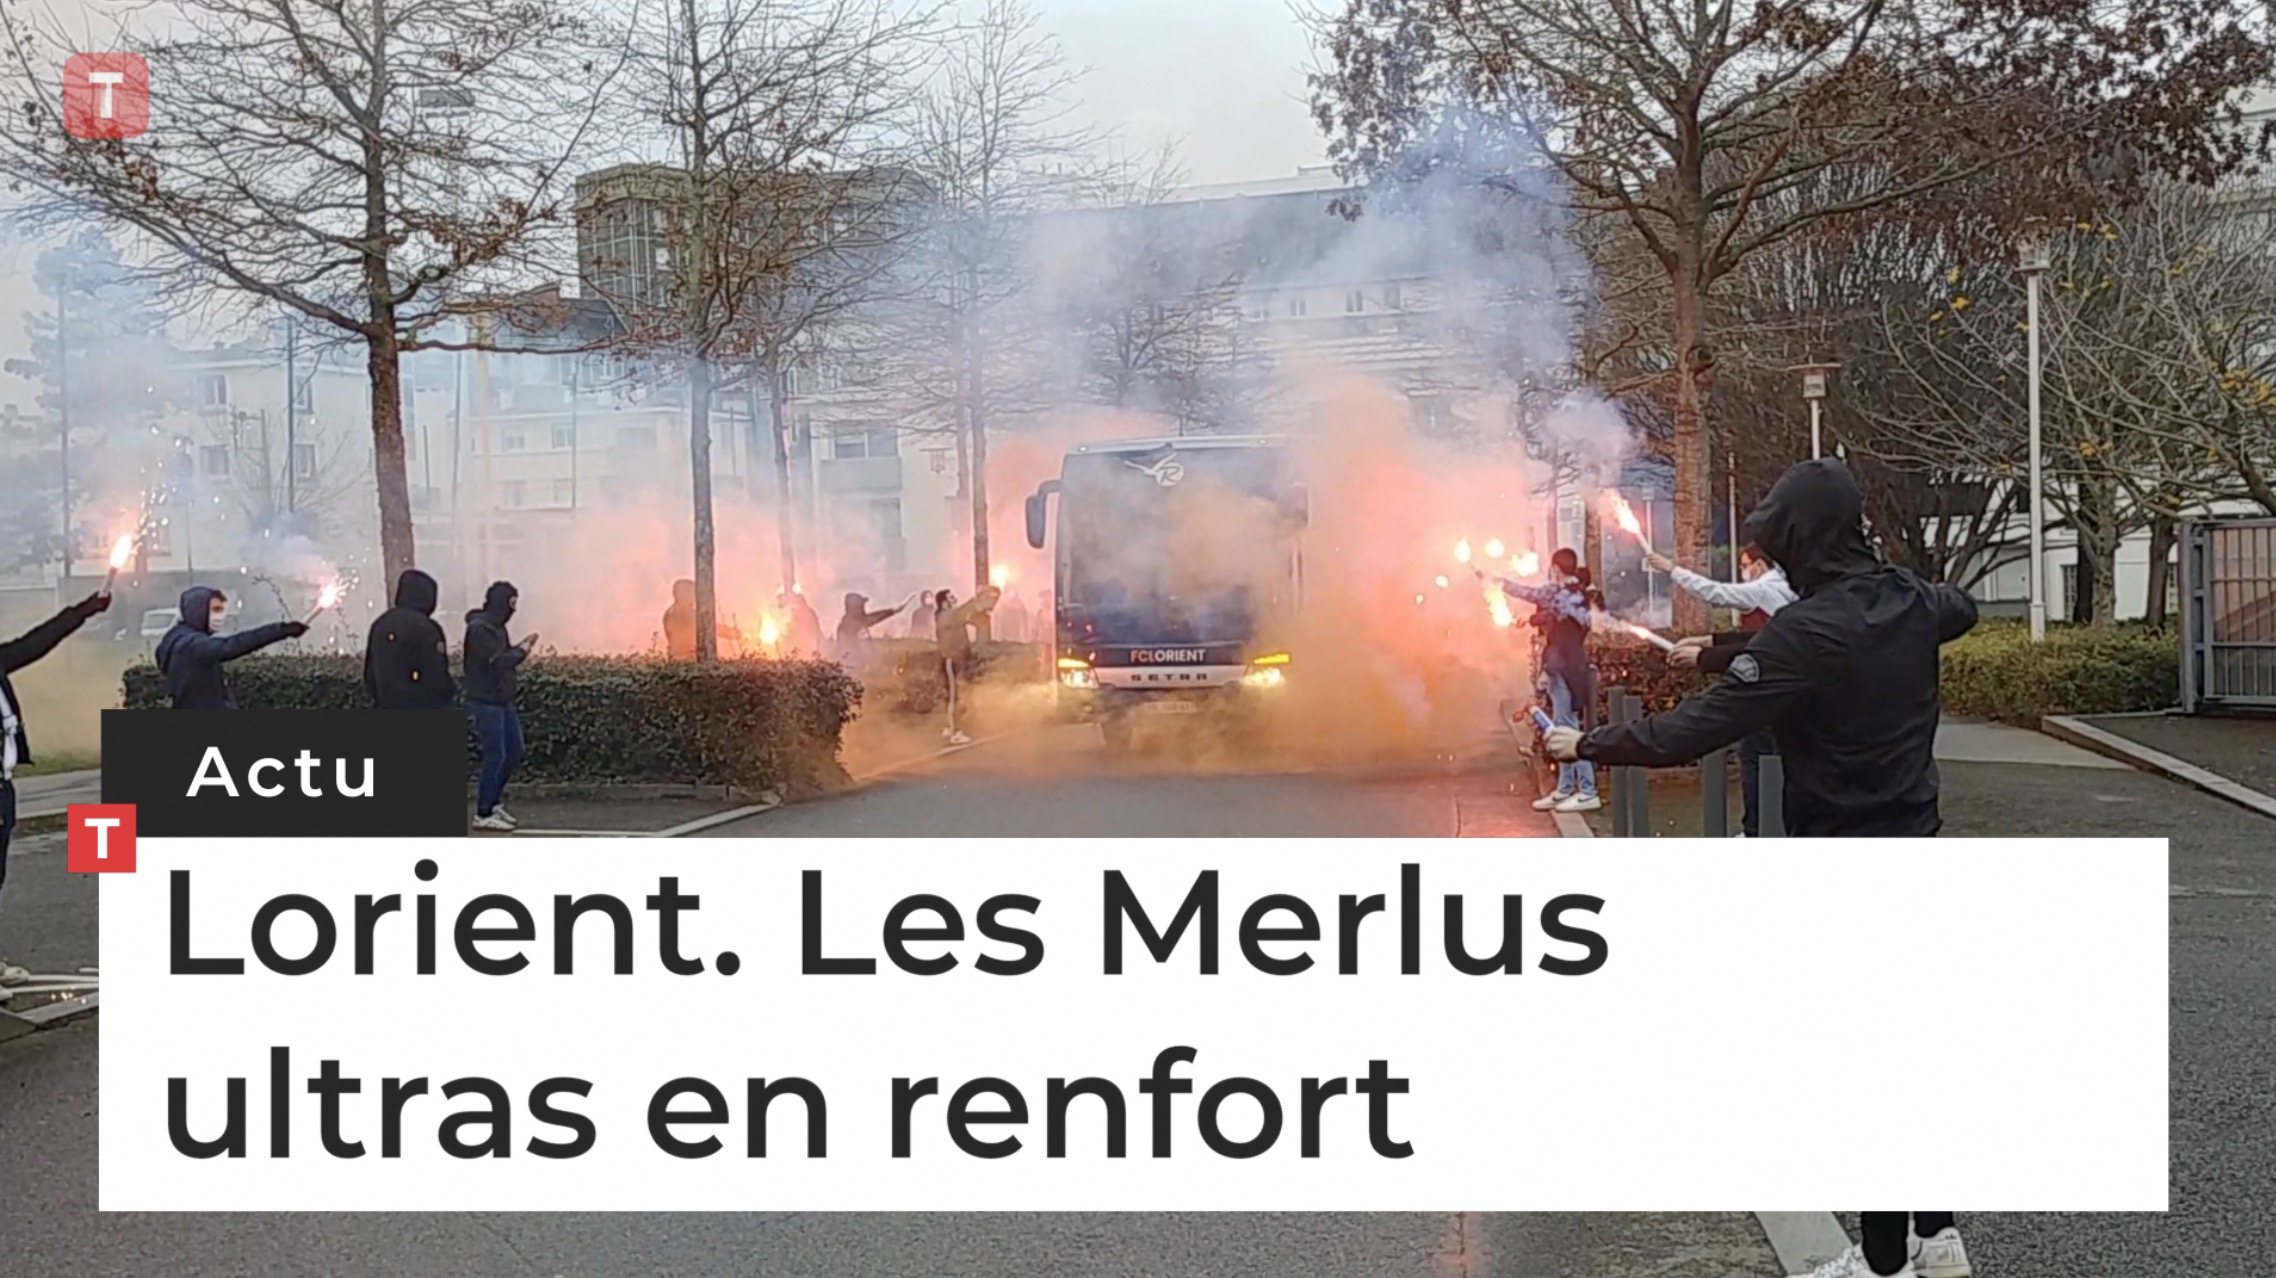 Lorient. Les Merlus ultras en renfort (Le Télégramme)